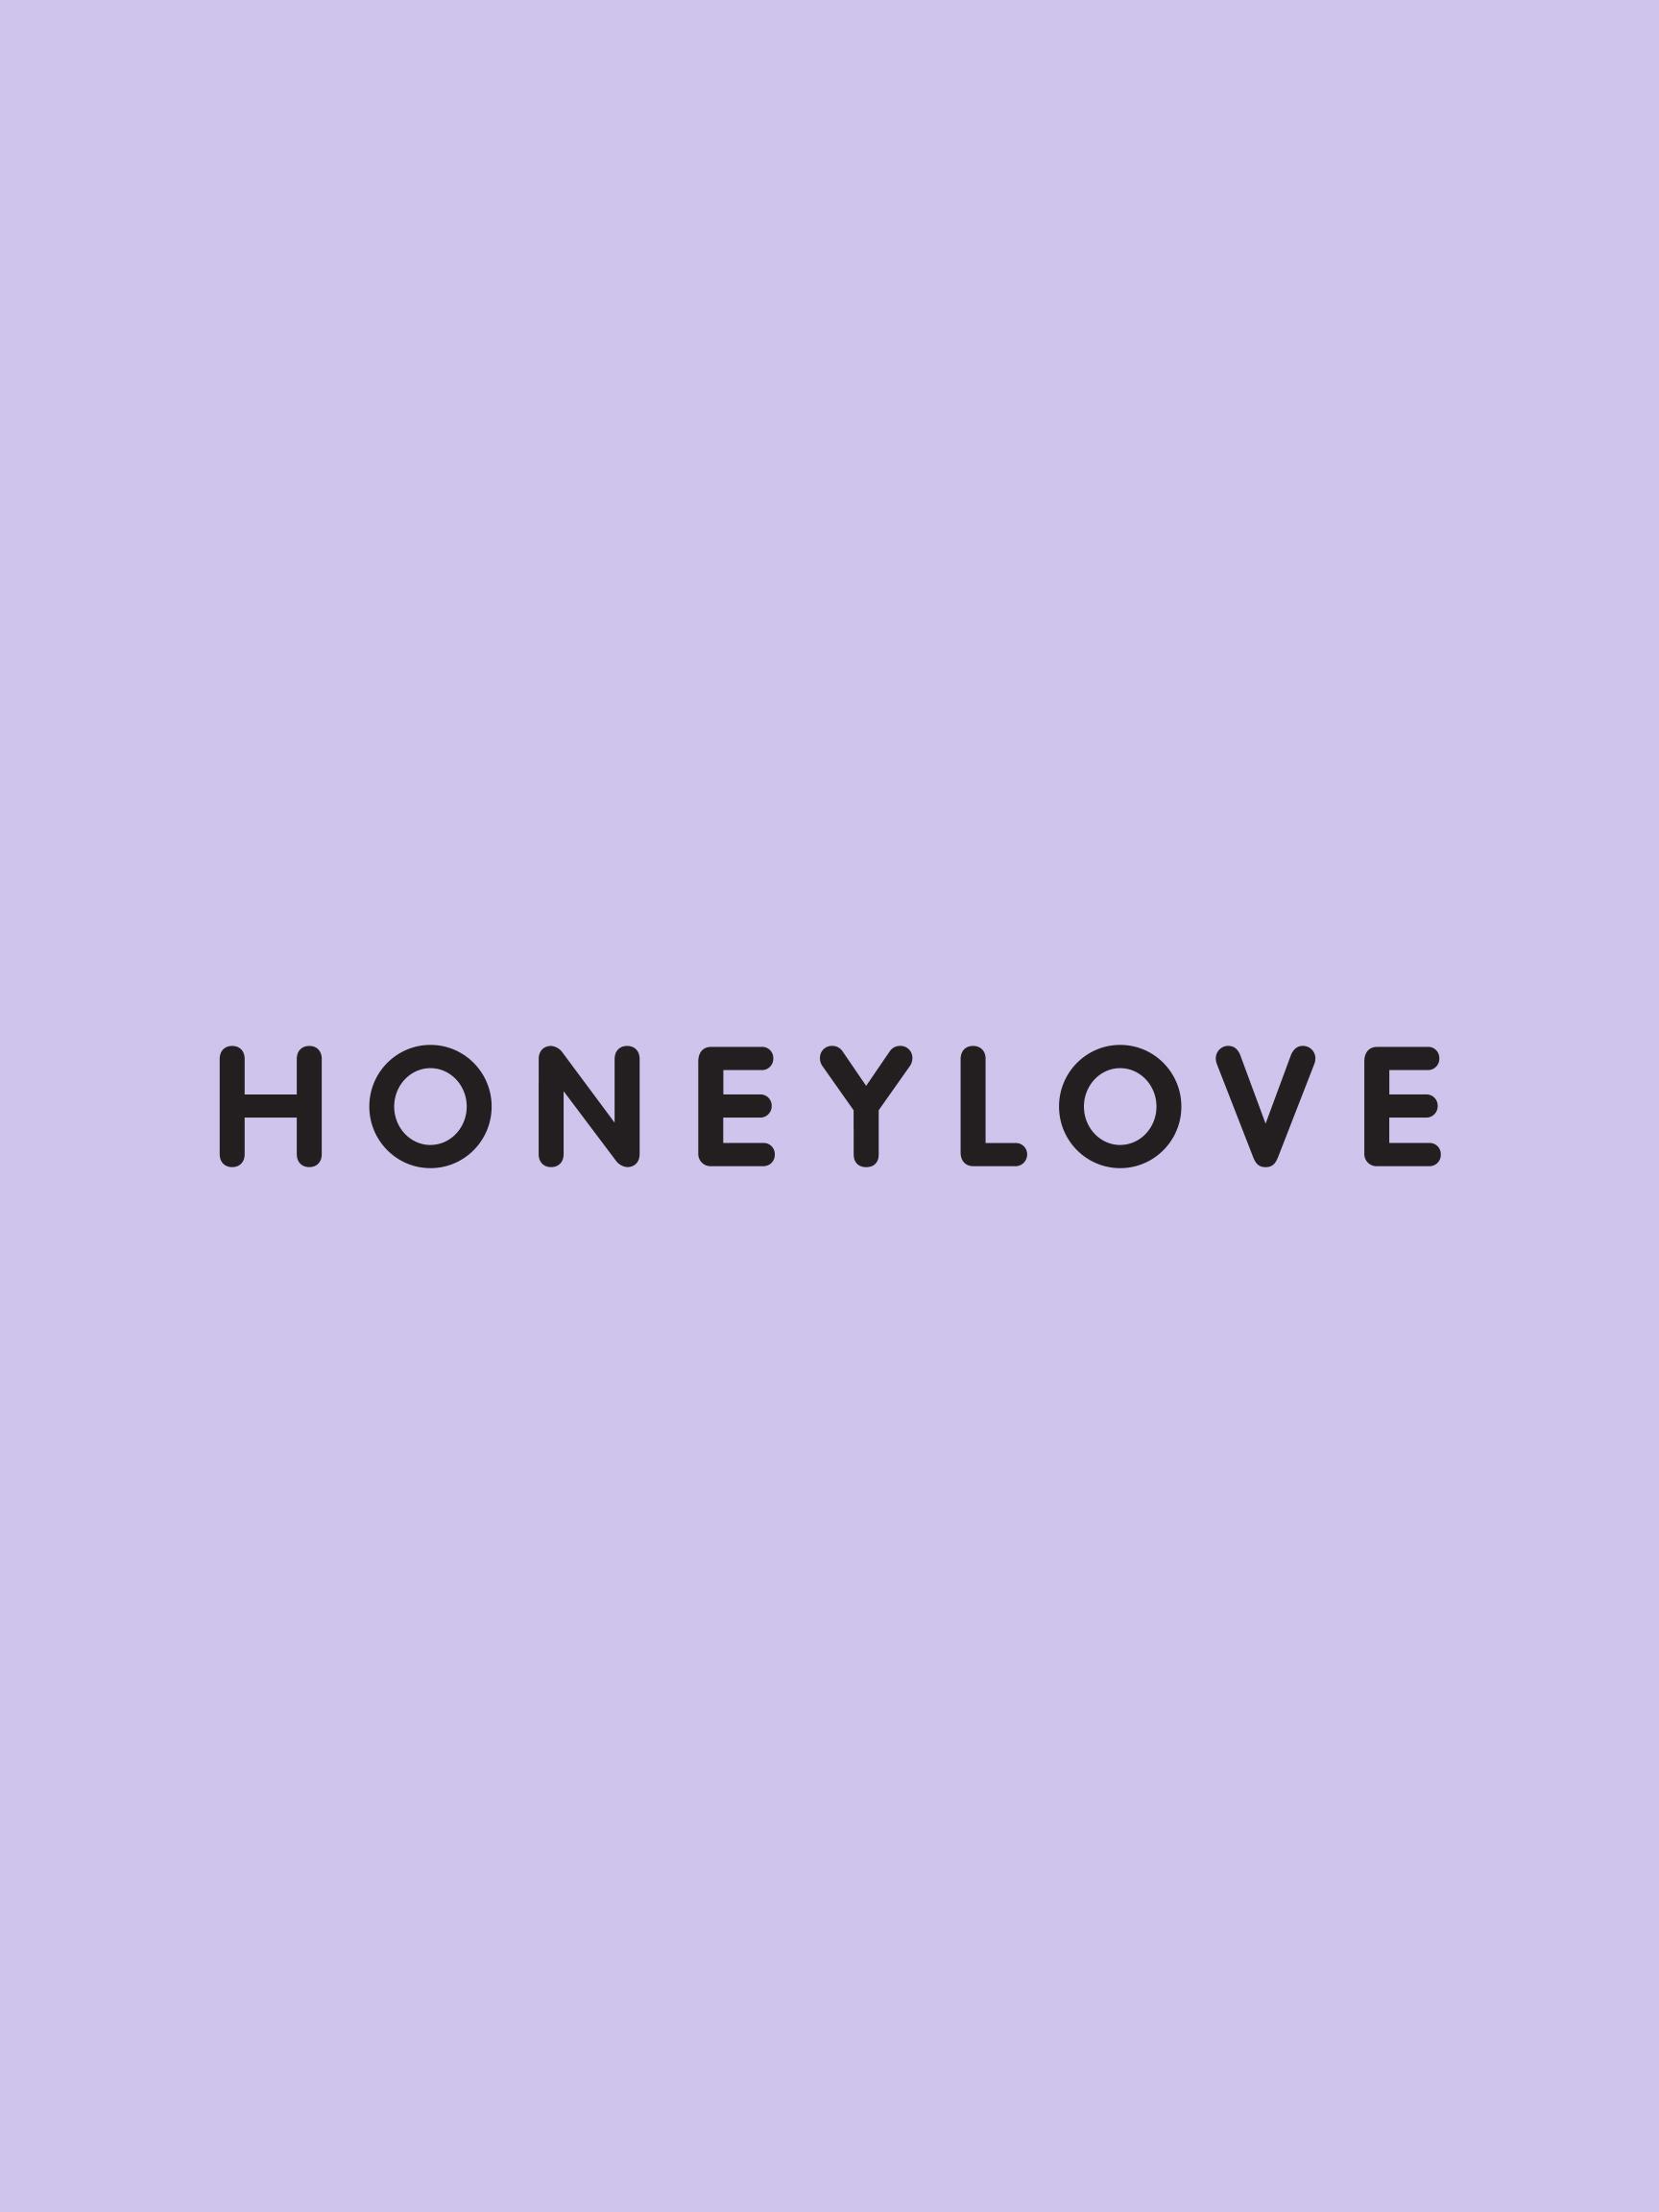 Honeylove logo 2x